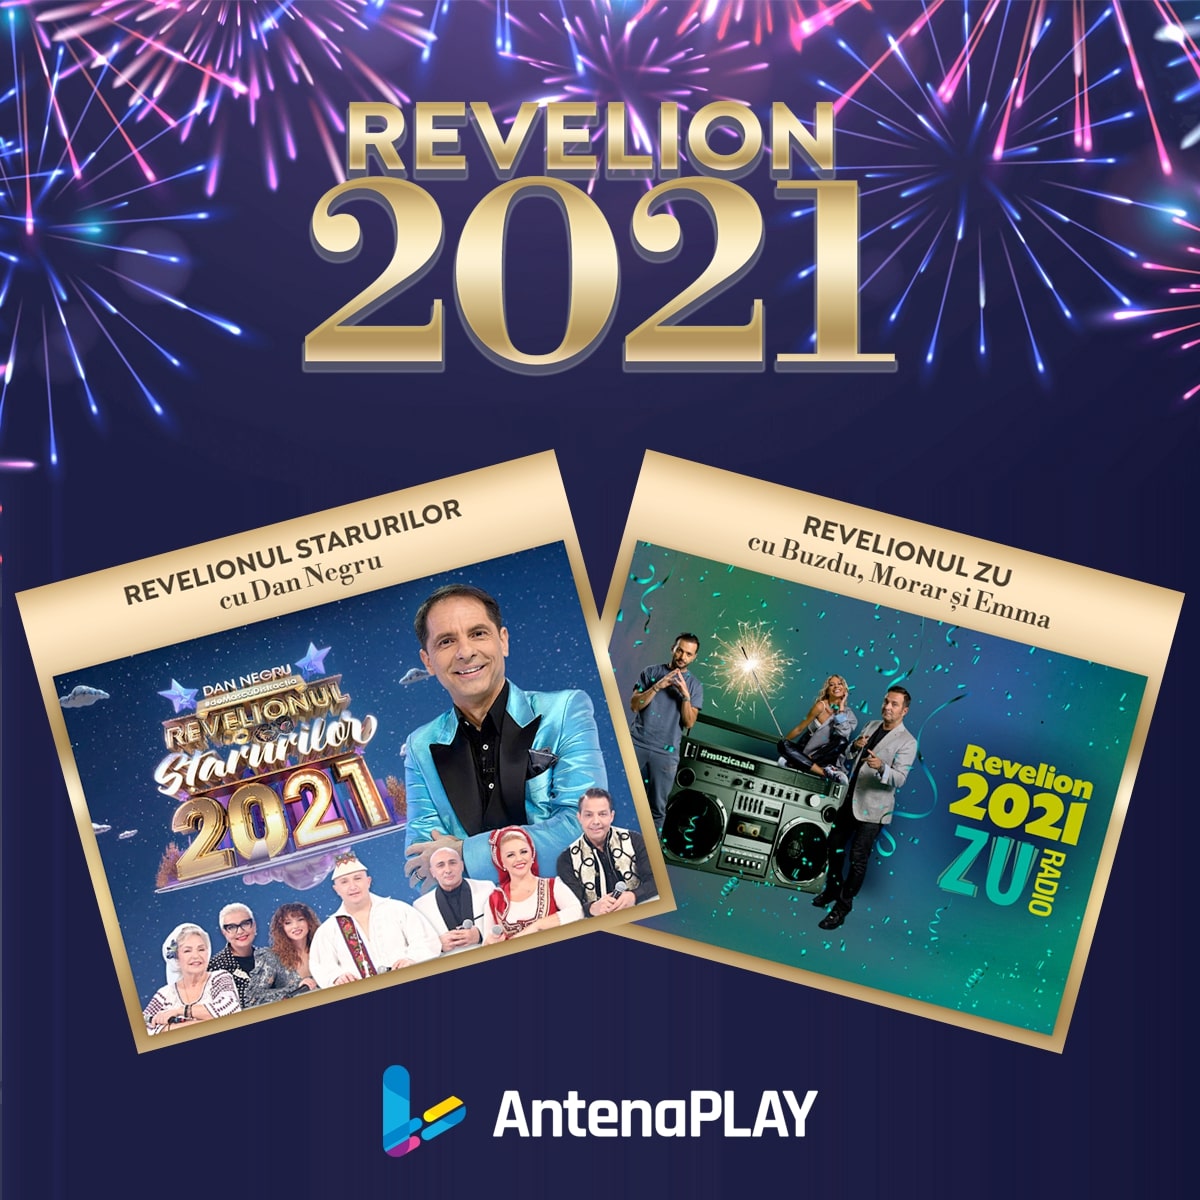 Pe 31 decembrie, AntenaPlay le oferă abonaţilor Revelion la alegere